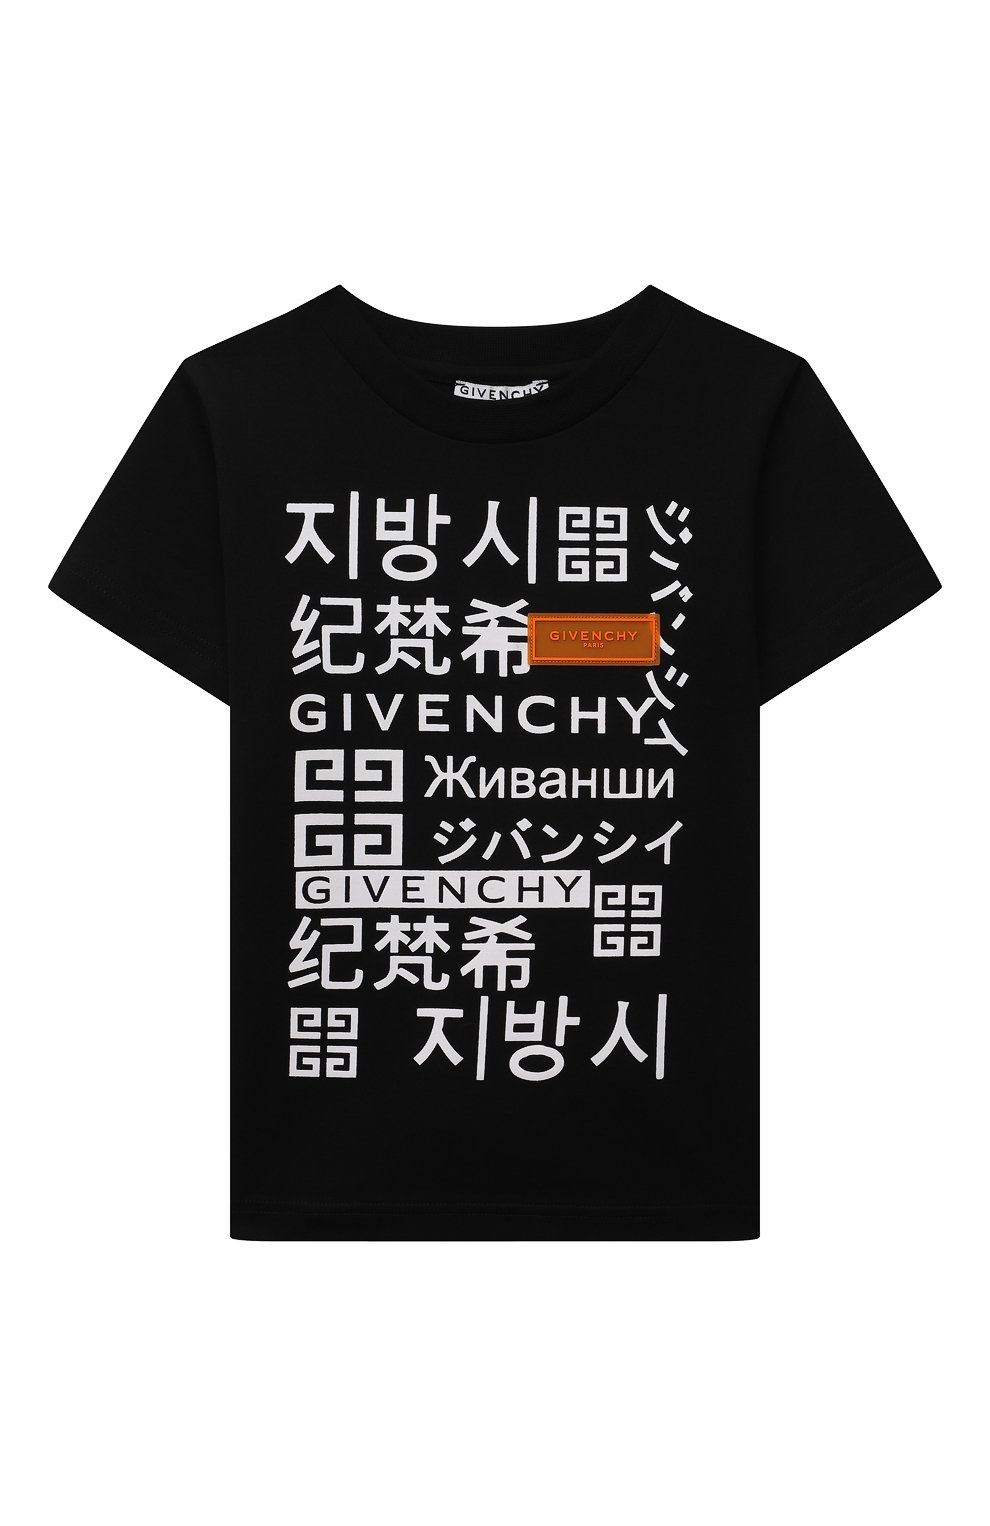 Футболки Givenchy, Хлопковая футболка Givenchy, Тунис, Чёрный, Хлопок: 100%;, 11970605  - купить